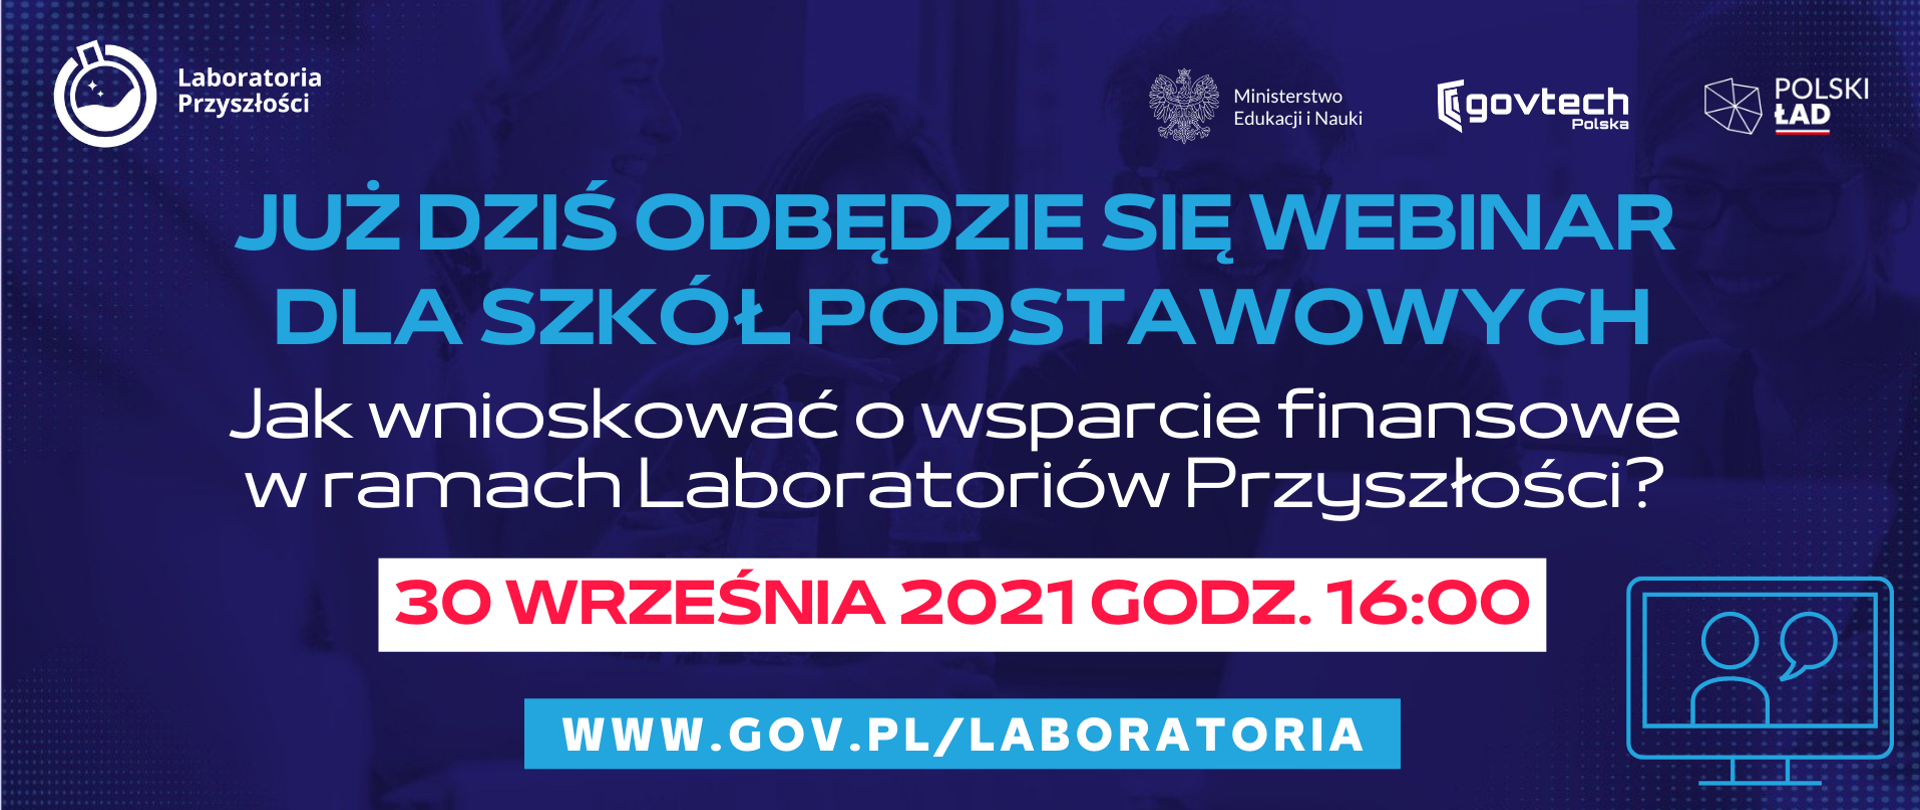 Już dziś odbędzie się webinar dla szkół podstawowych: Jak wnioskować o wsparcie finansowe w ramach Laboratoriów Przyszłości?
30 września 2021 godz. 16:00
www.gov.pl/laboratoria 